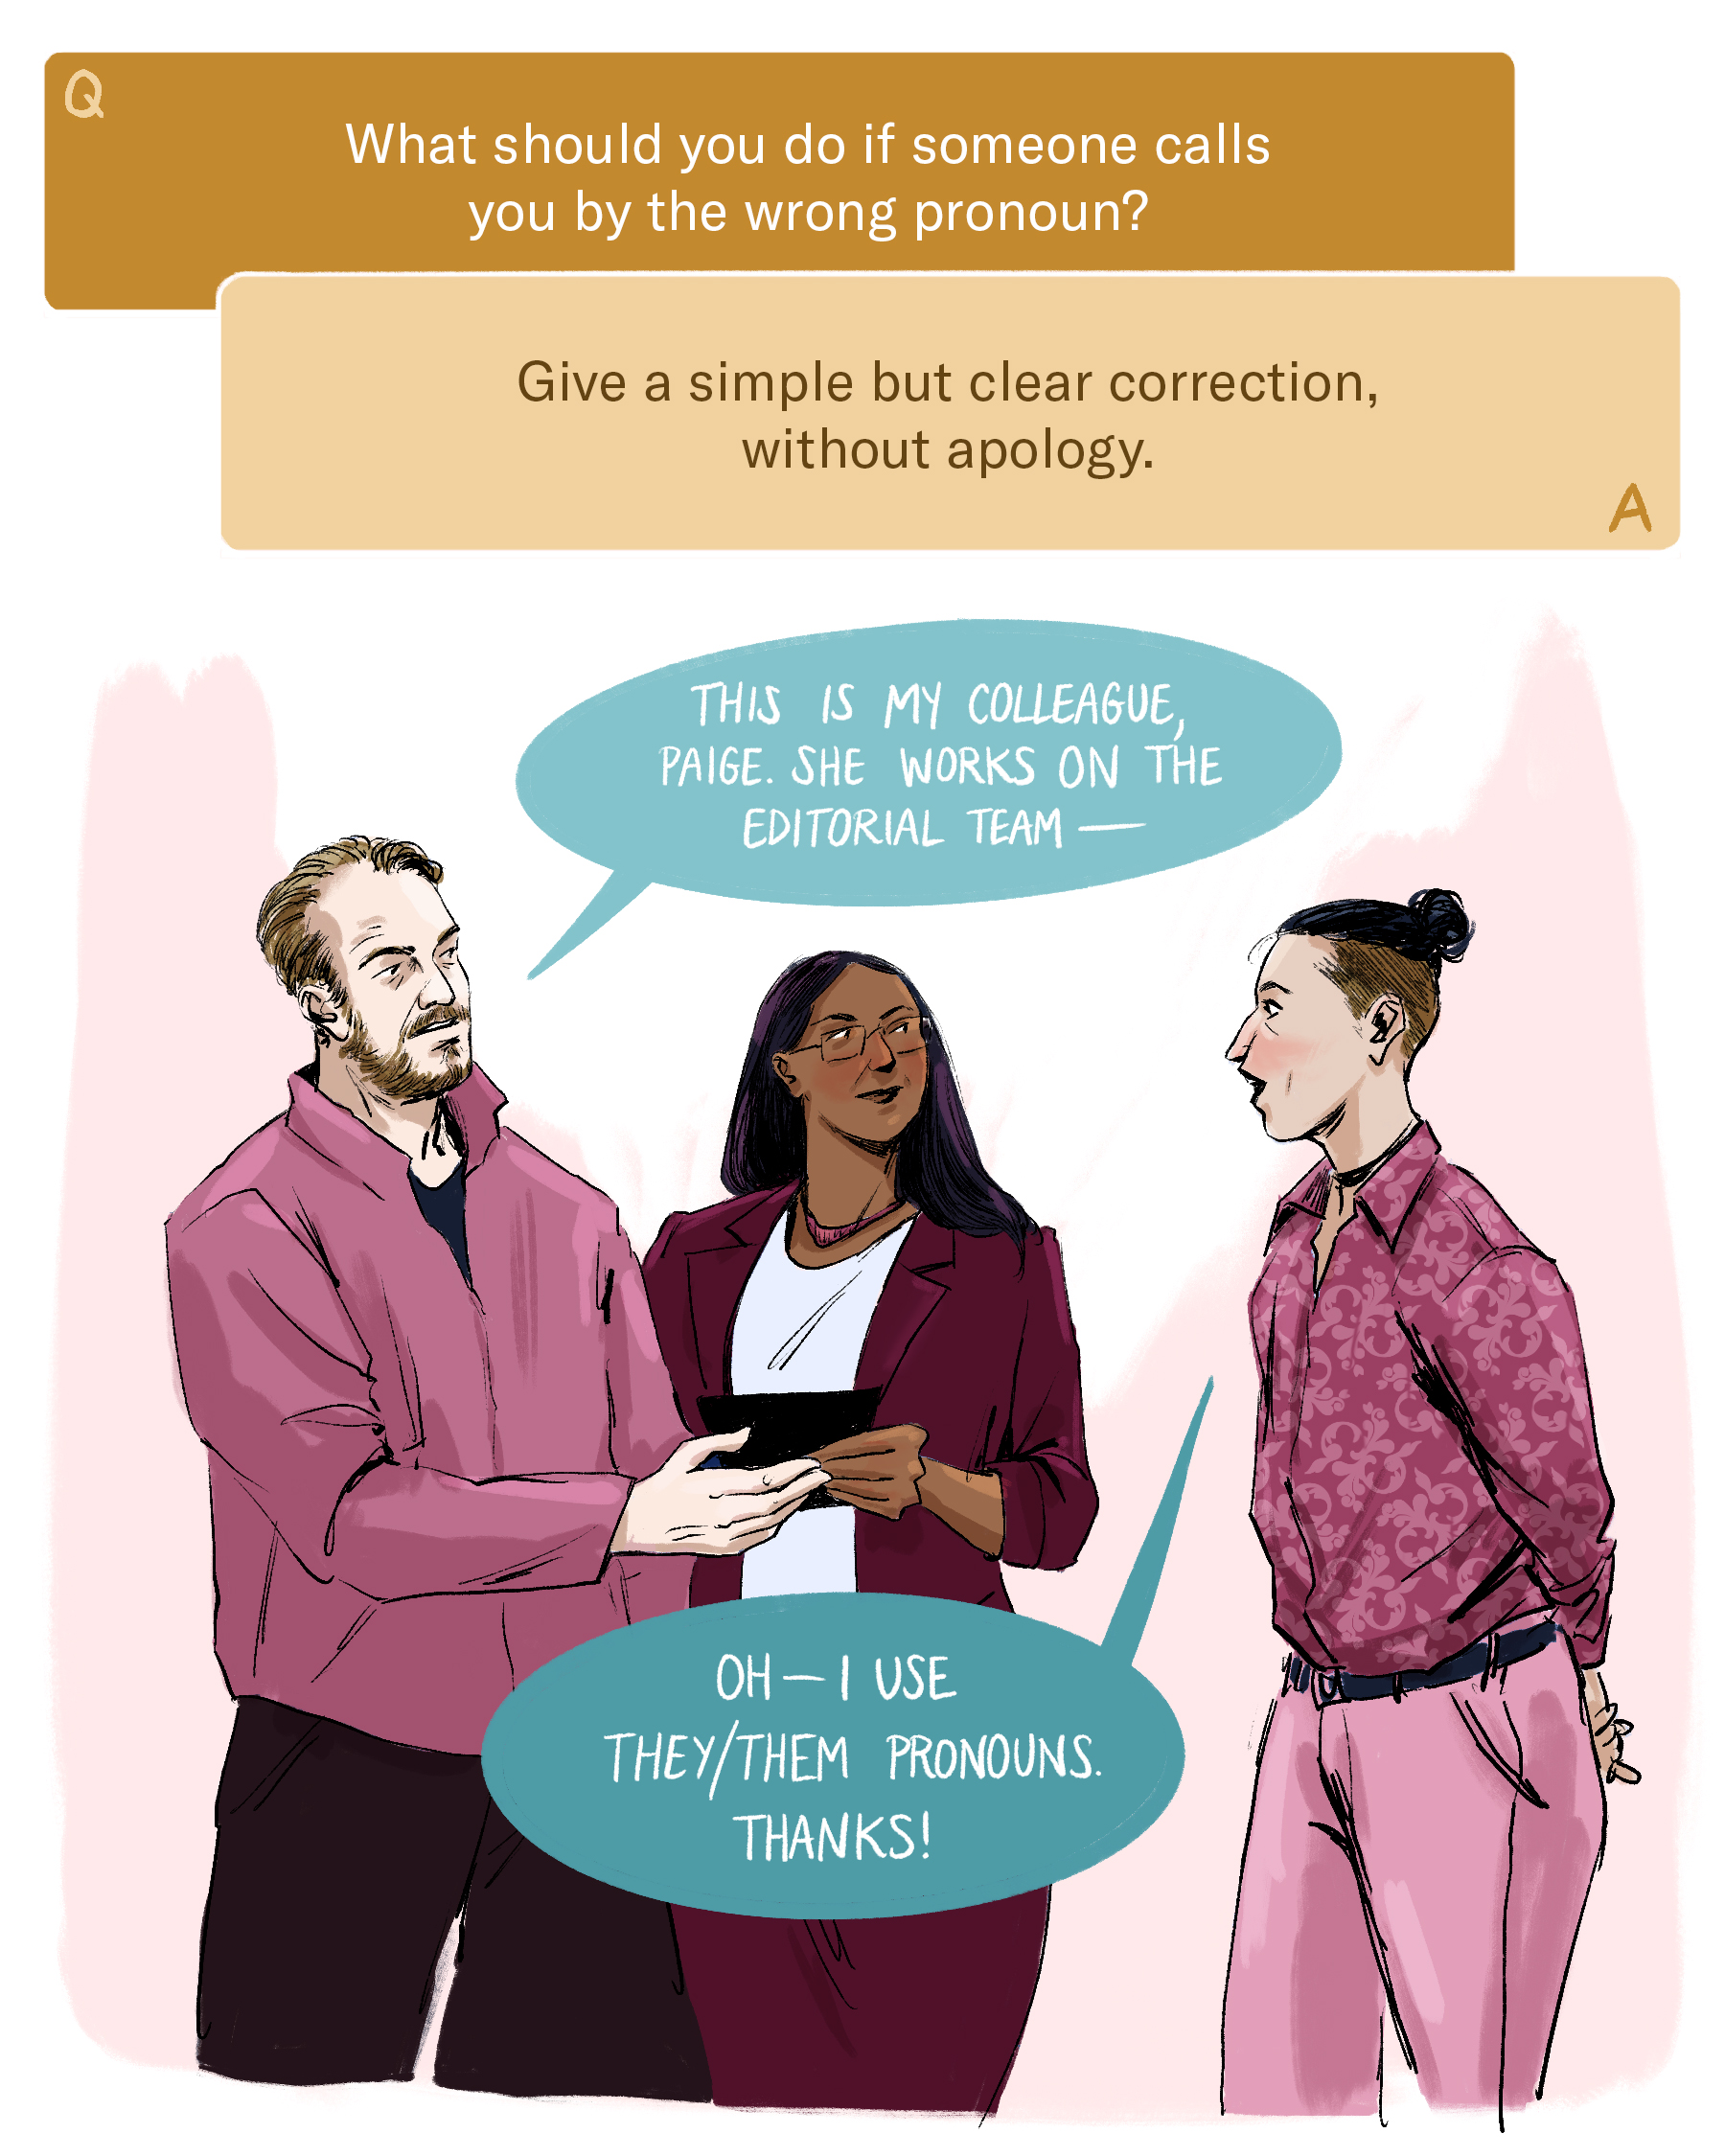 Cómo hablar sobre los pronombres en el trabajo: una guía visual